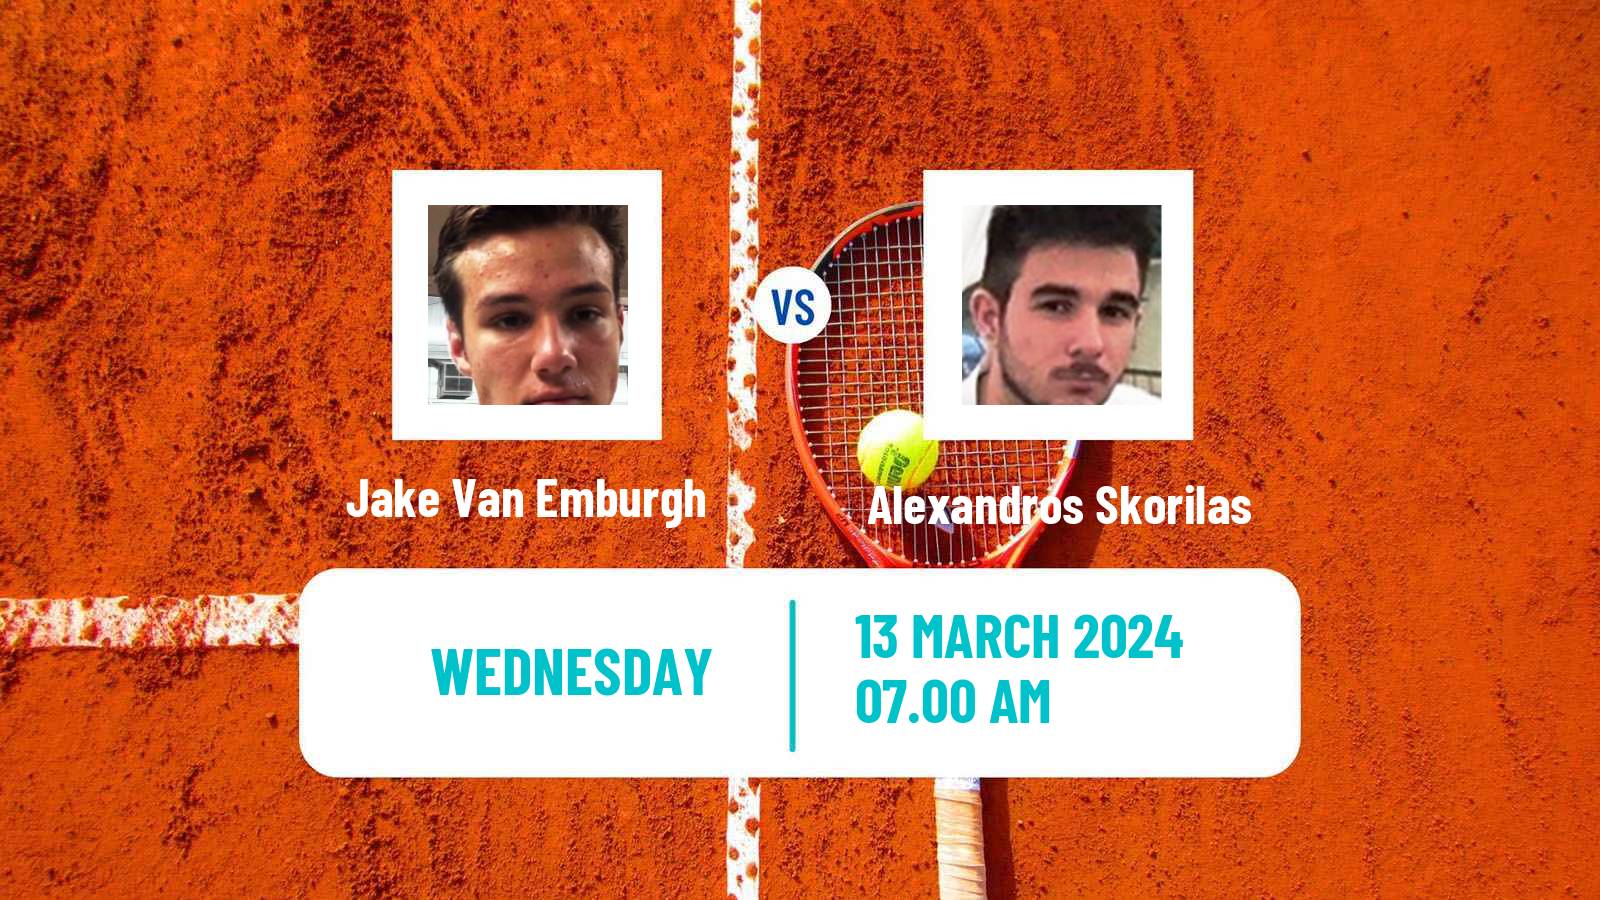 Tennis ITF M15 Heraklion 2 Men Jake Van Emburgh - Alexandros Skorilas